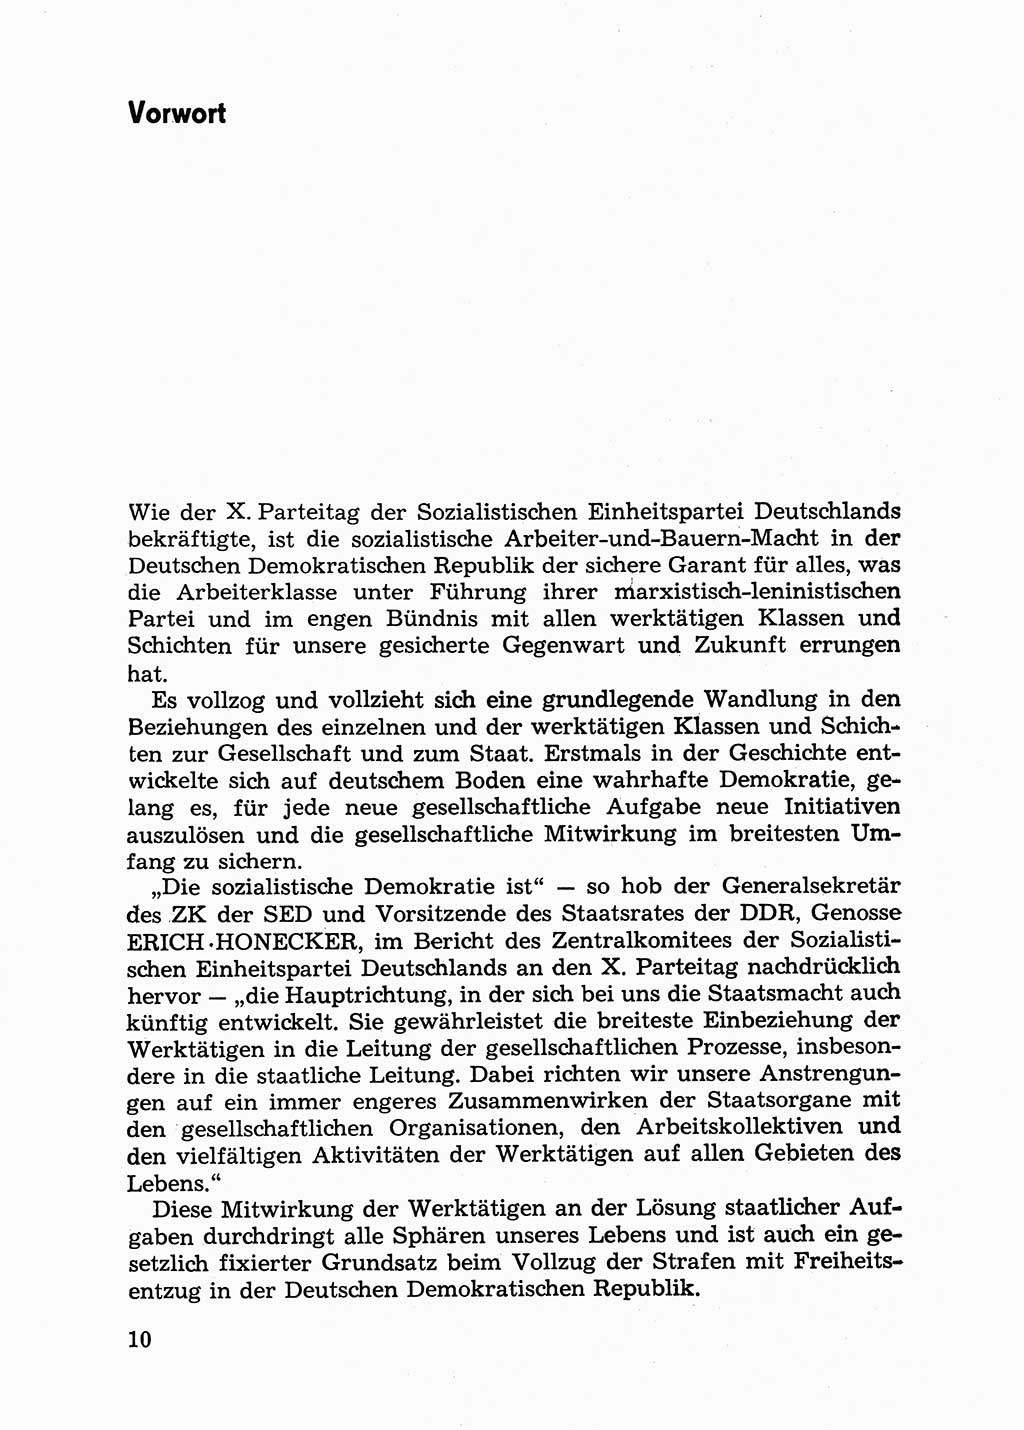 Handbuch für Betriebsangehörige, Abteilung Strafvollzug (SV) [Ministerium des Innern (MdI) Deutsche Demokratische Republik (DDR)] 1981, Seite 10 (Hb. BA Abt. SV MdI DDR 1981, S. 10)